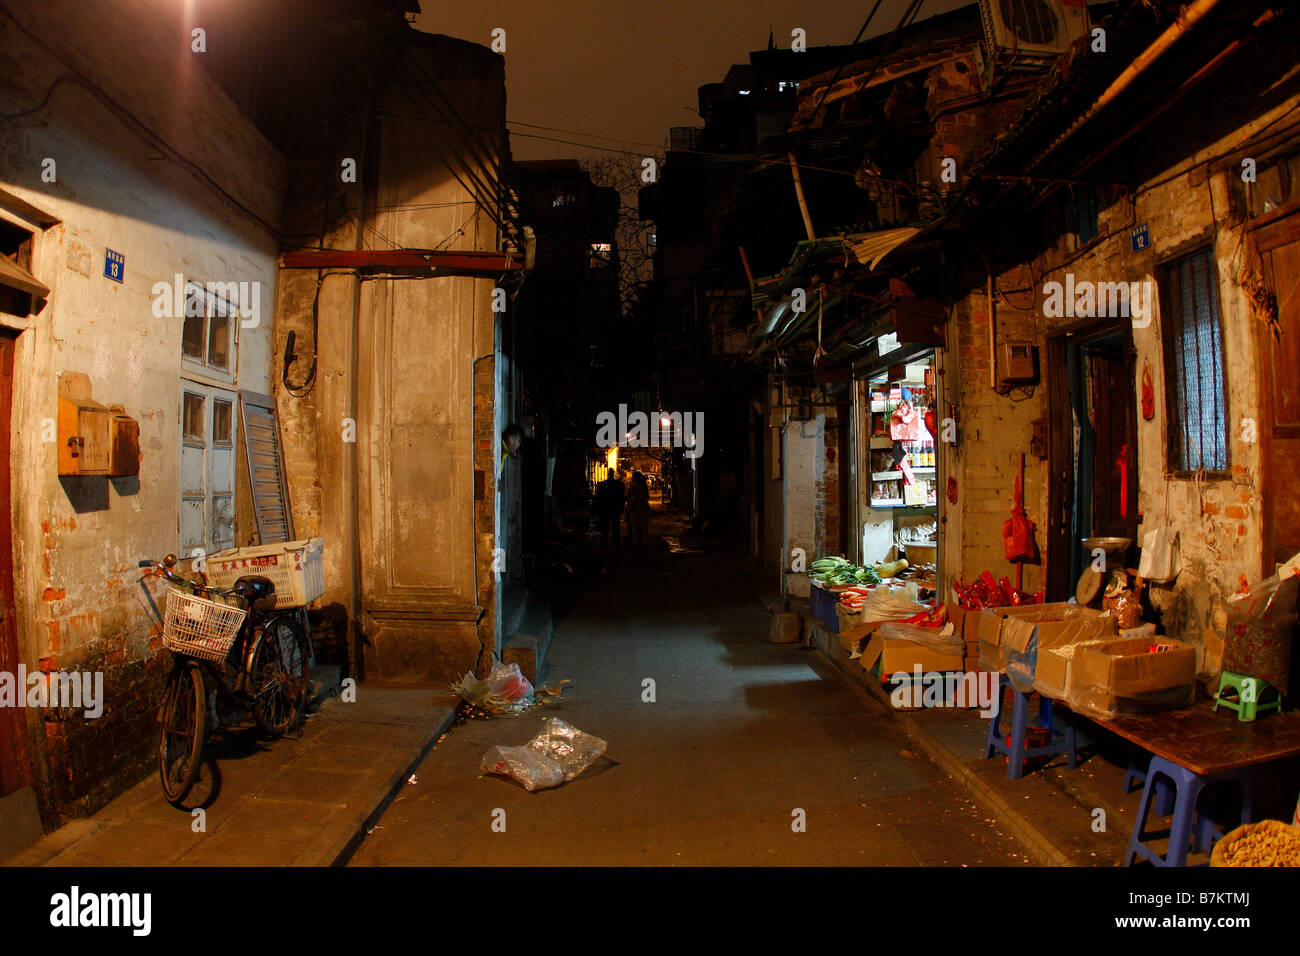 Gasse China chinesische Bequemlichkeit Kultur beleuchtet schwach emergenten Markt Märkte Guangzhou Haus Einkommen Lücke Lane Lifestyl Stockfoto